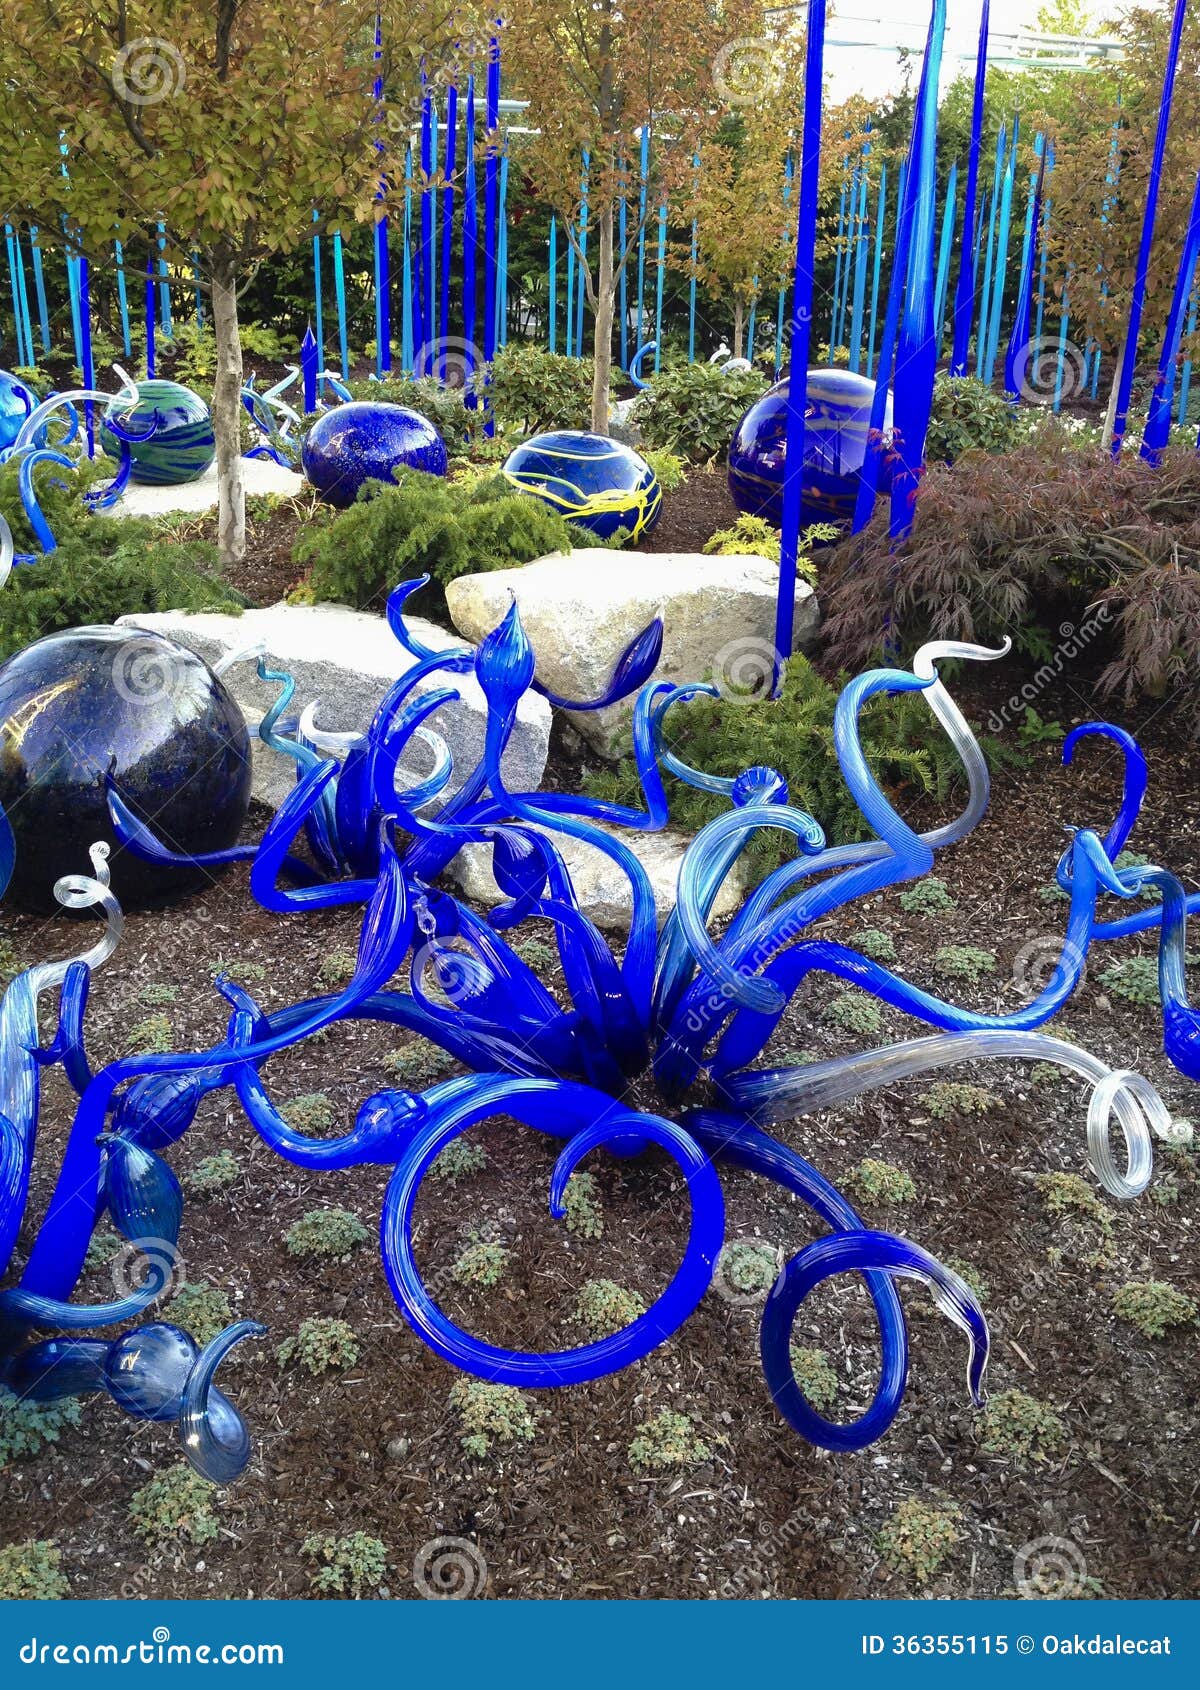 20+ Blown Glass Art Sculptures